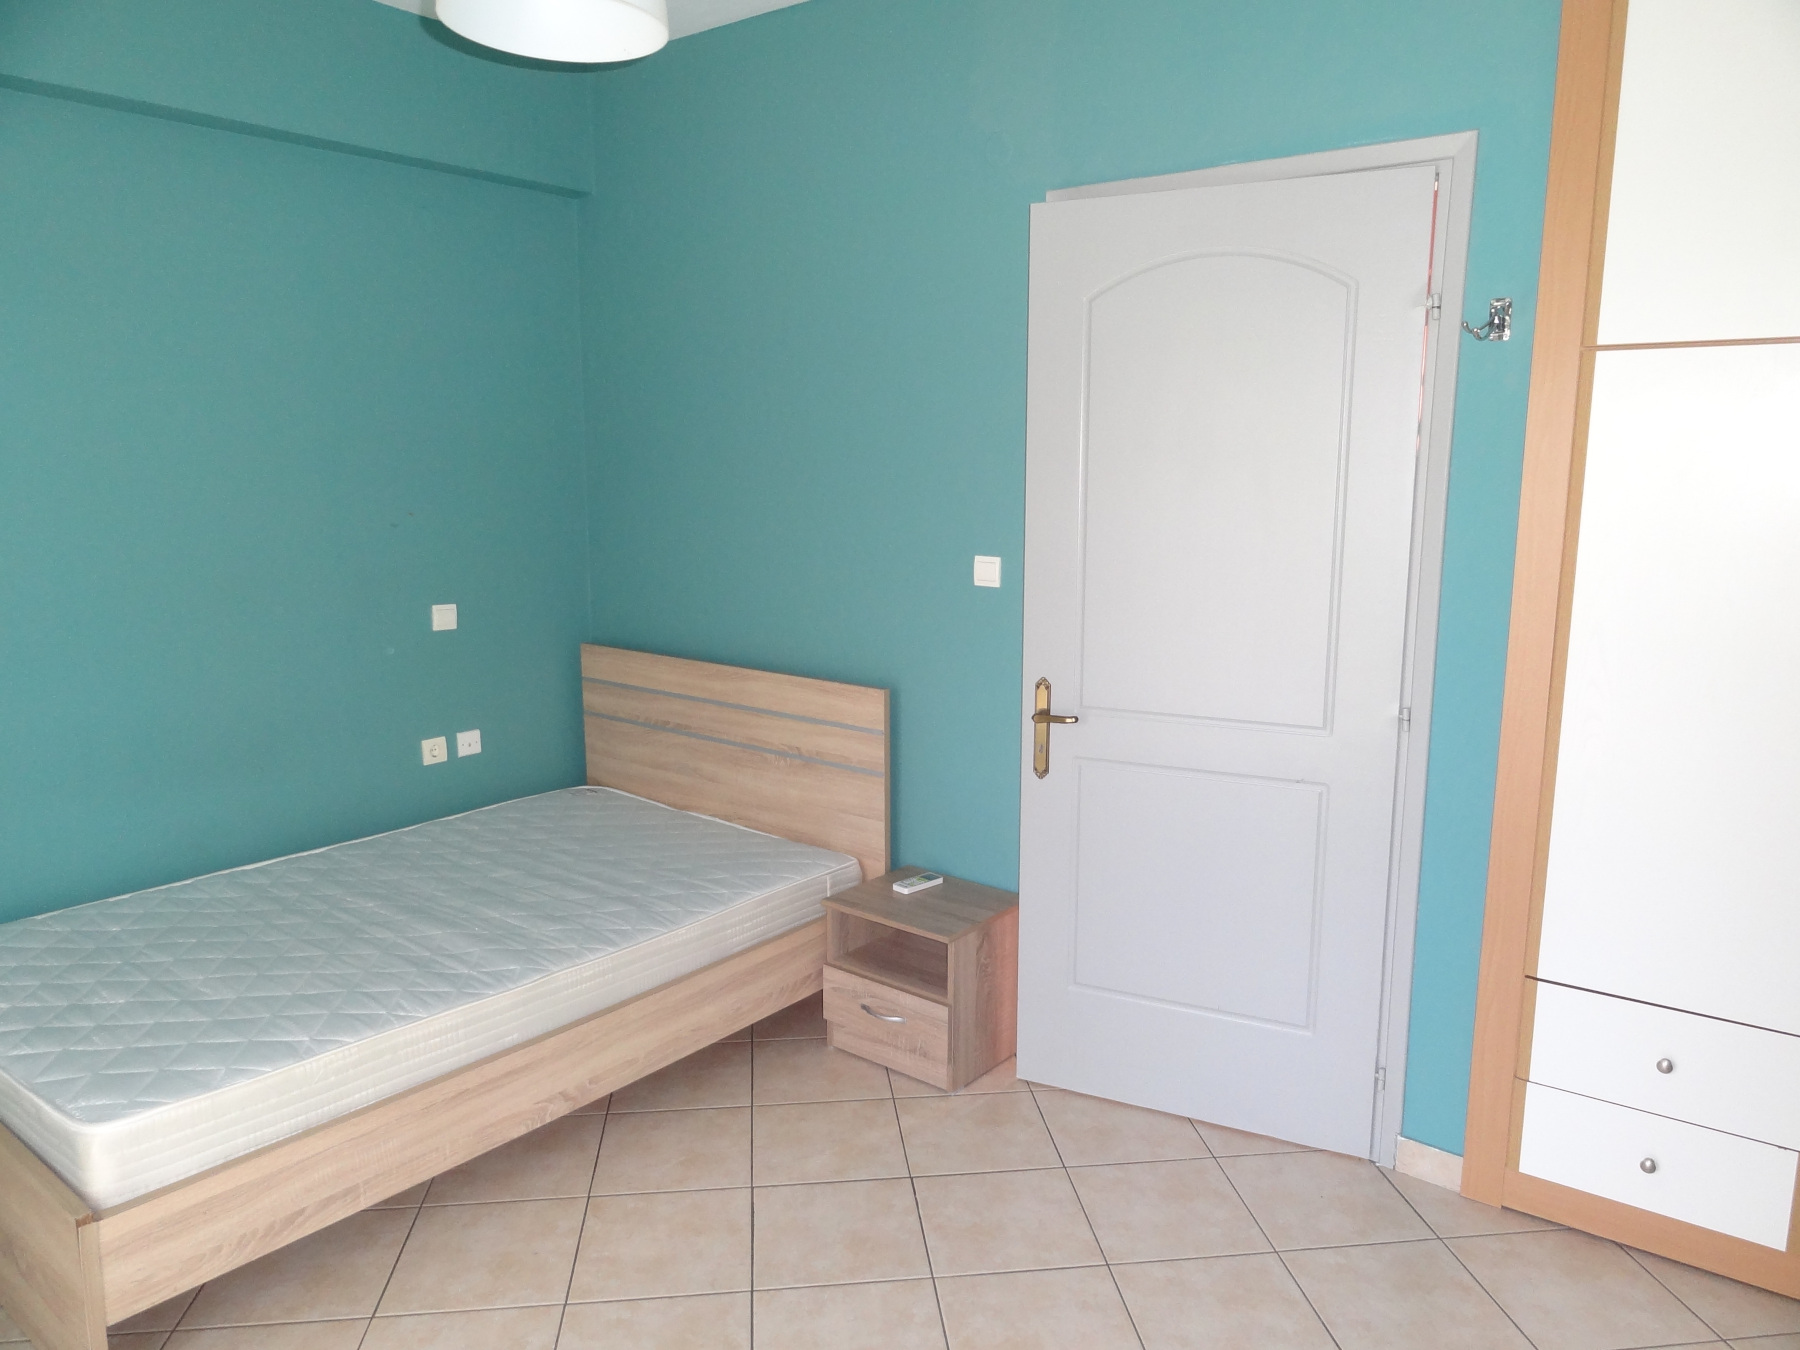 1 bedroom studio for rent, 33 sq.m. 1st floor, built in 2005, near Niarchos Avenue in Ioannina.